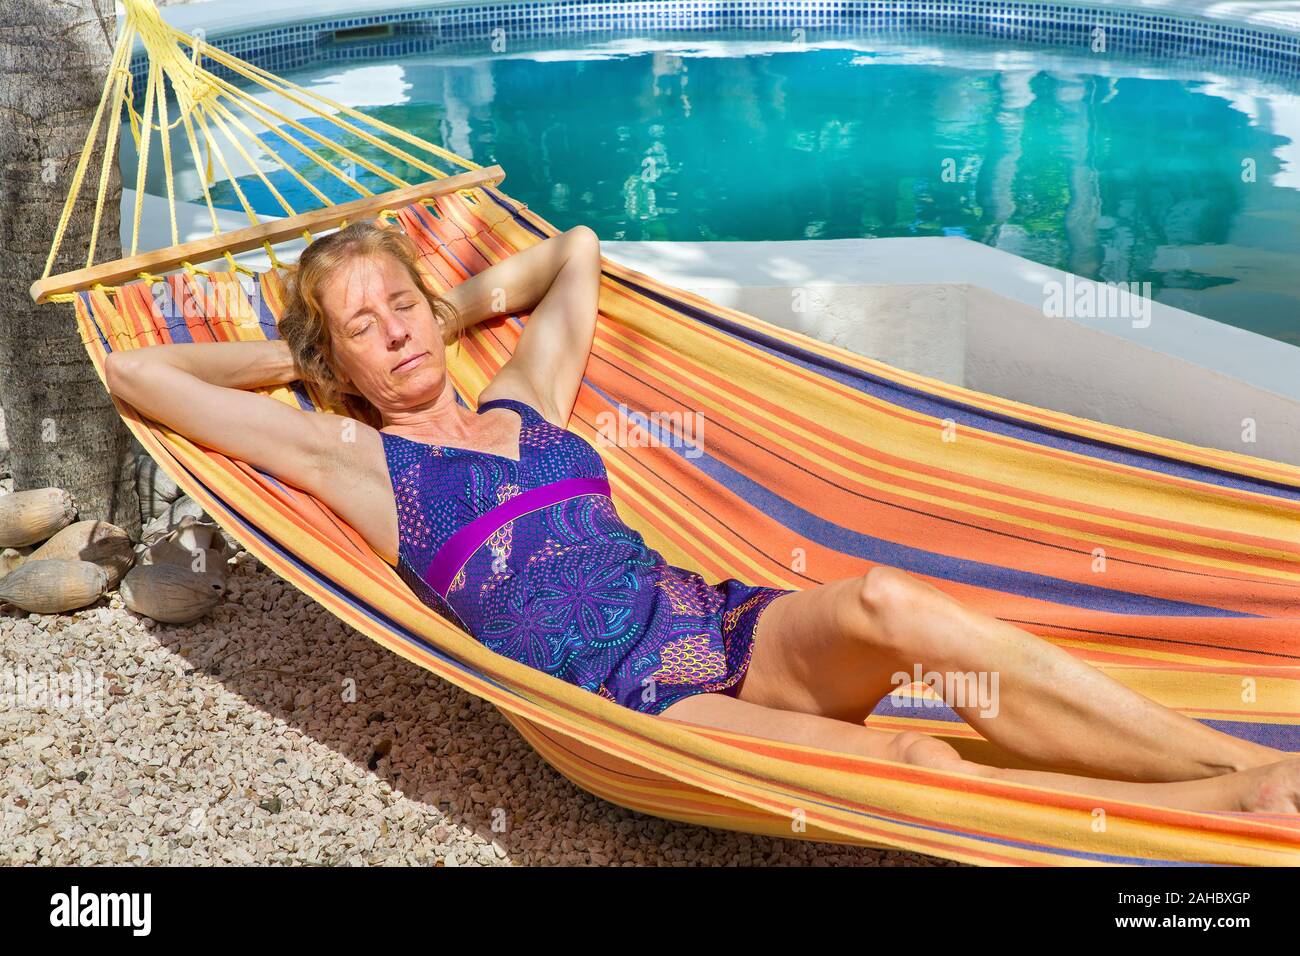 Femme couchée dans un hamac coloré près de bassin de baignade Banque D'Images